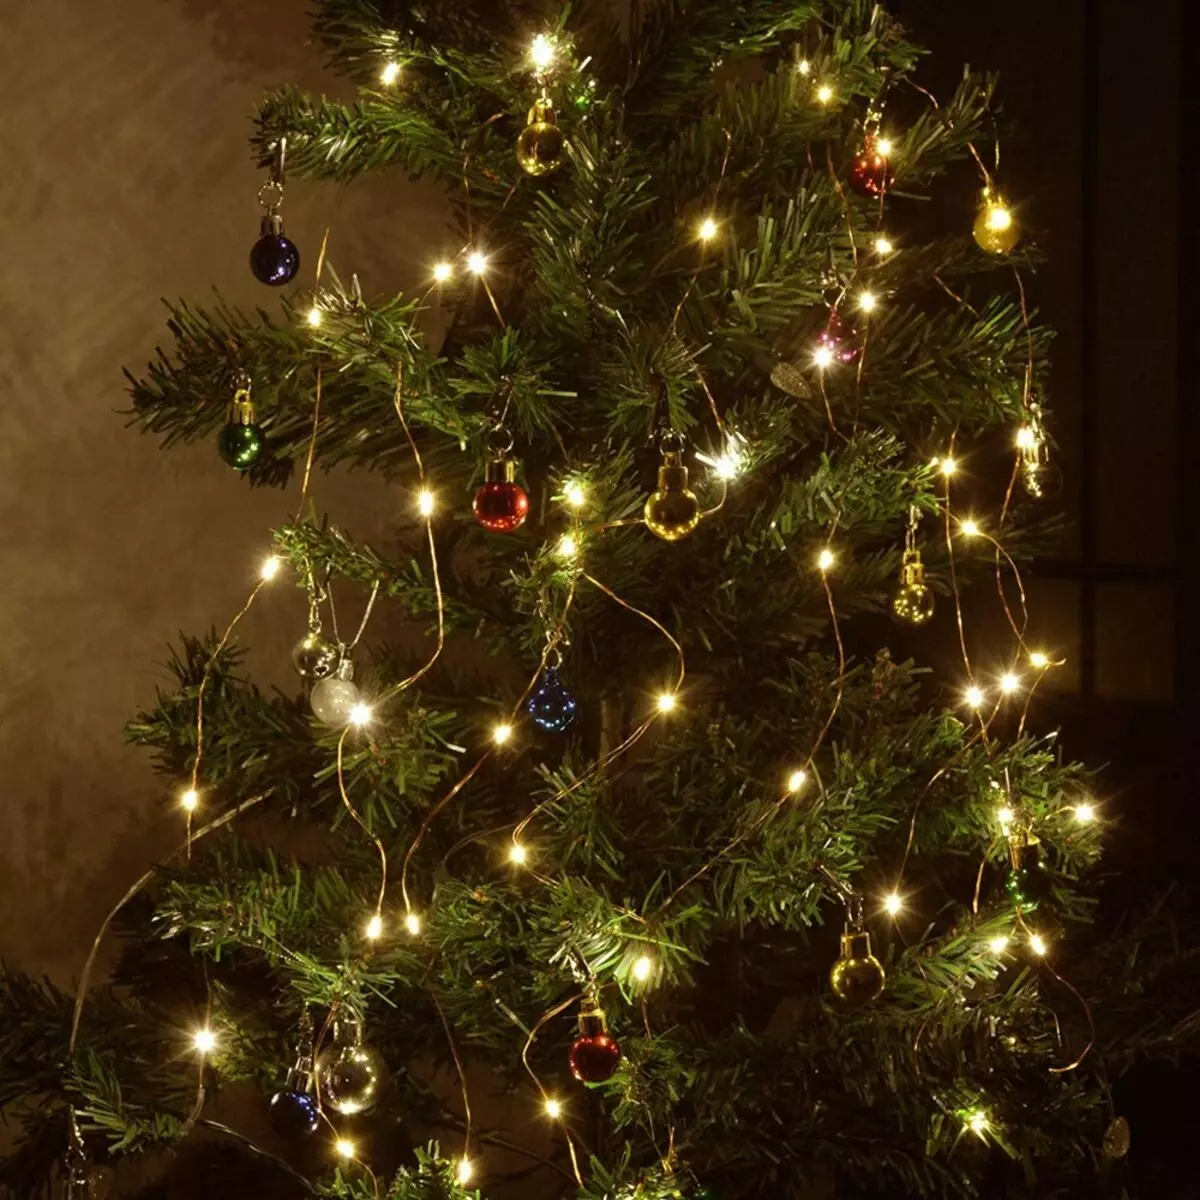 Ako zdobí vianočný strom s vencom? Ako správne a krásne obliekať to podľa schémy s žiariace elektrickej girlandami a ďalšie veniec? 7630_18